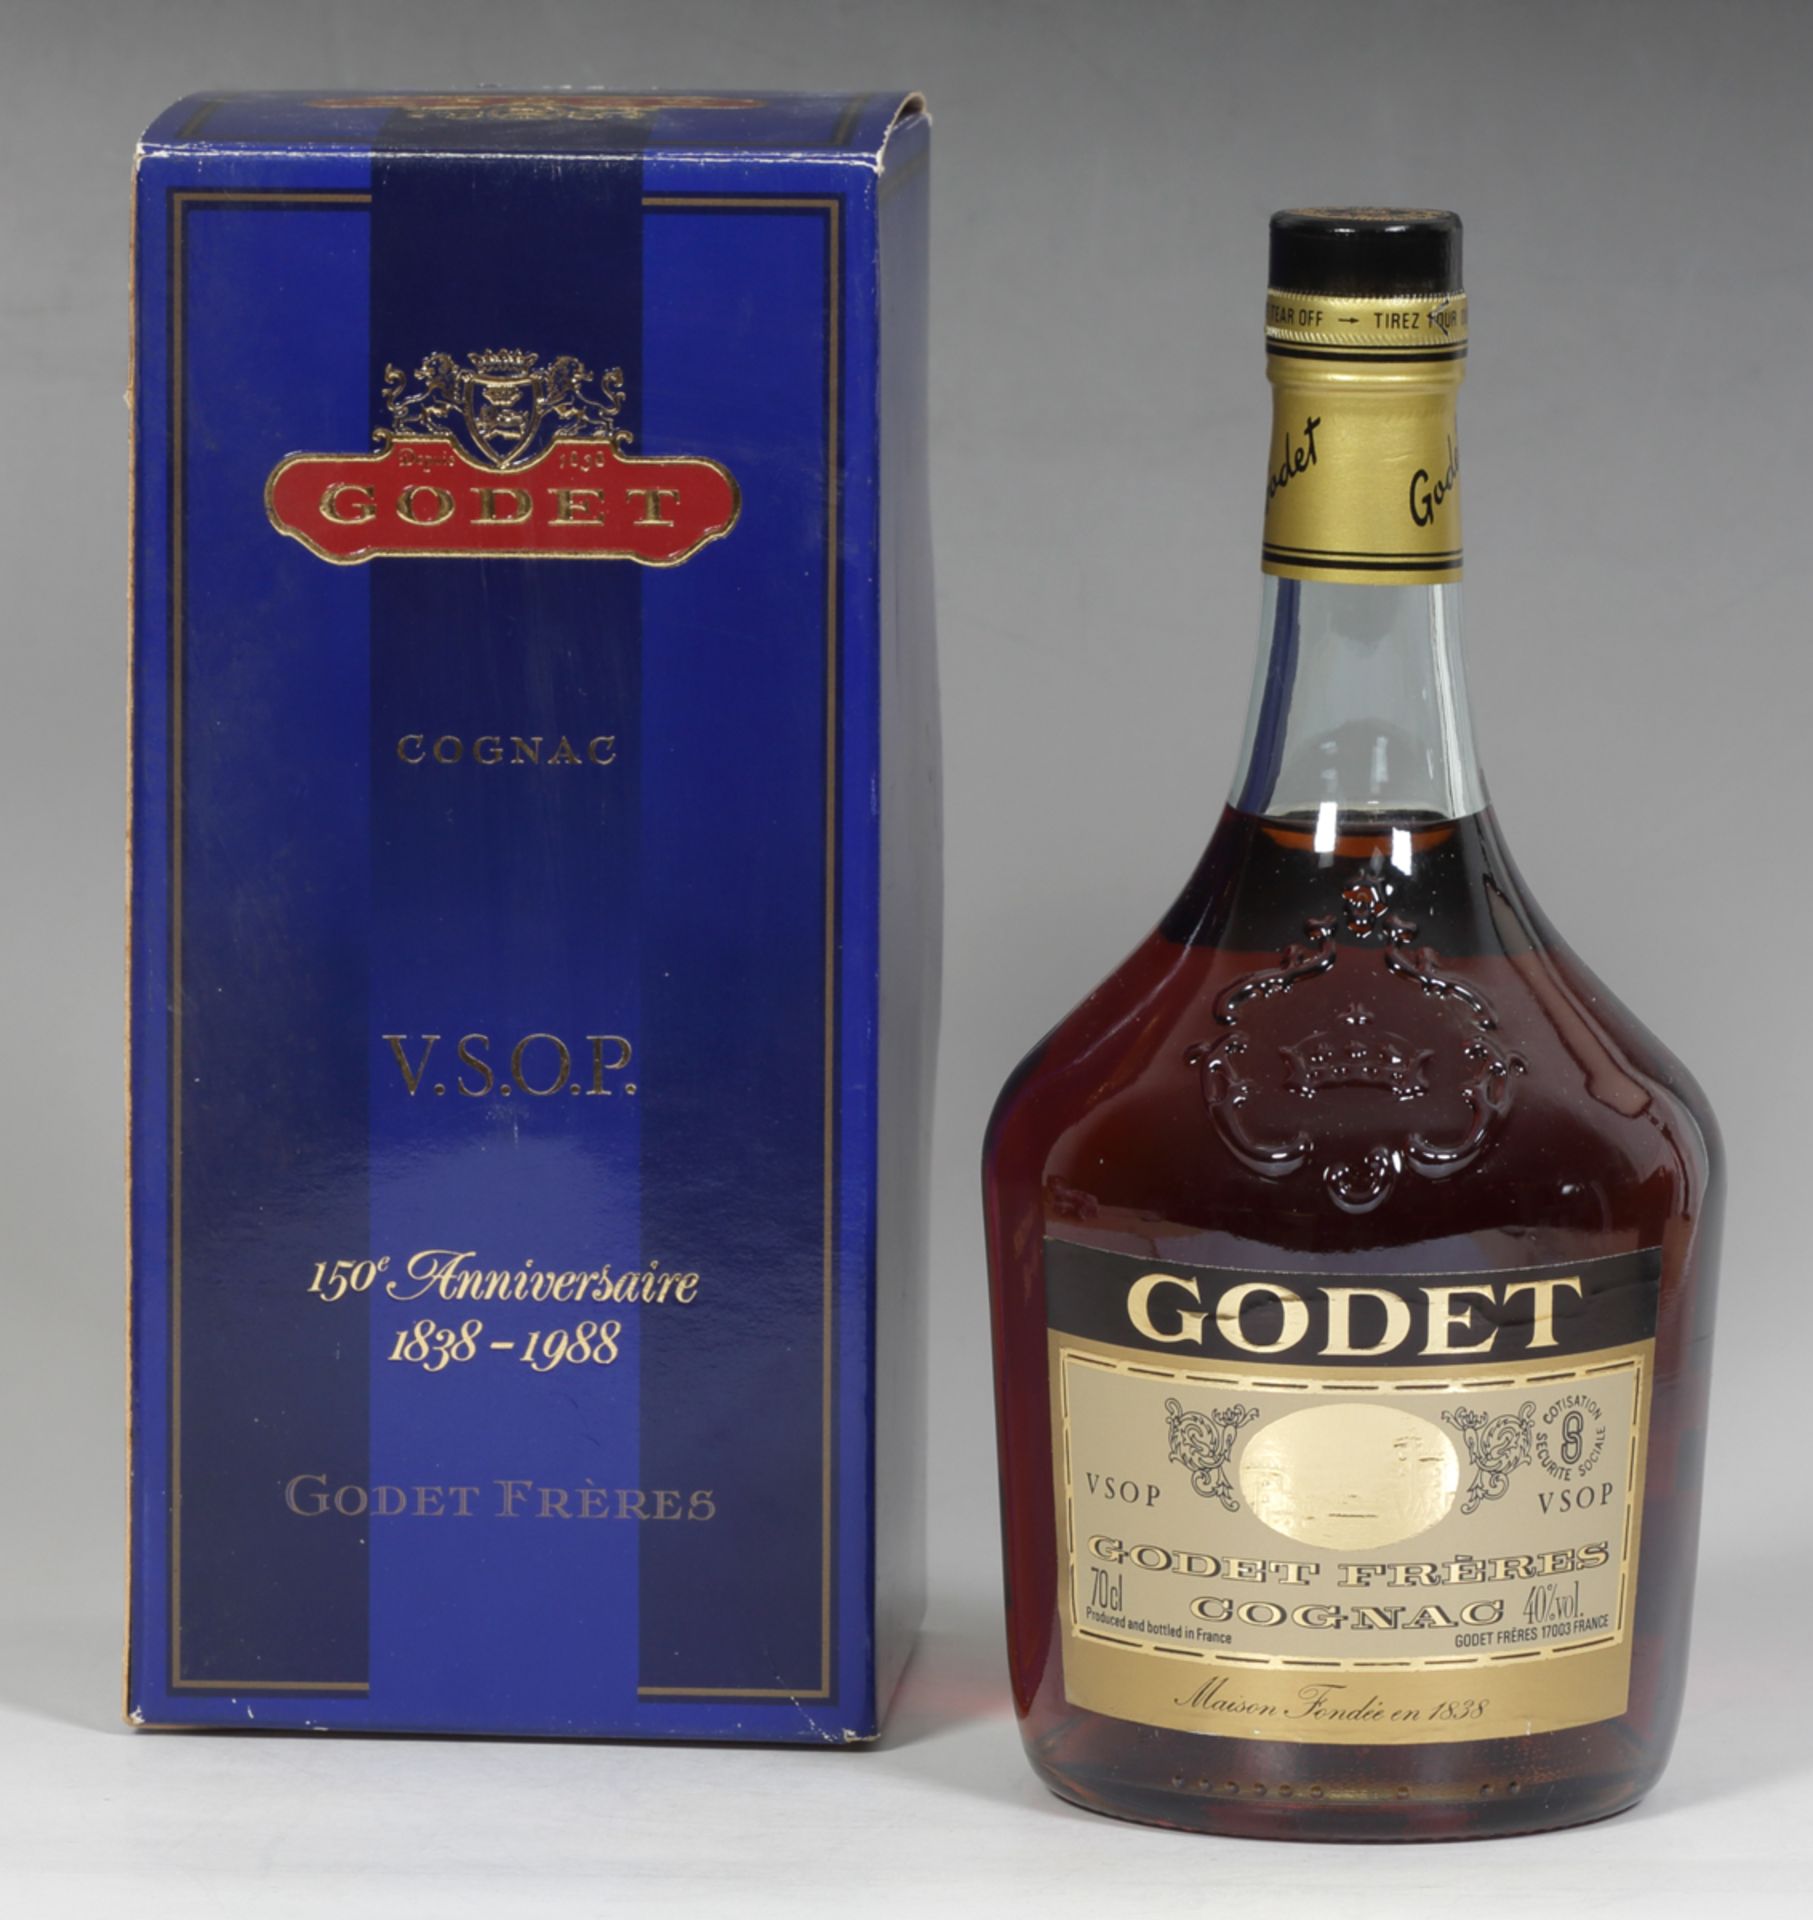 Godet Frères Cognac, 150 Anniversaire 1838-1988 - Image 2 of 2